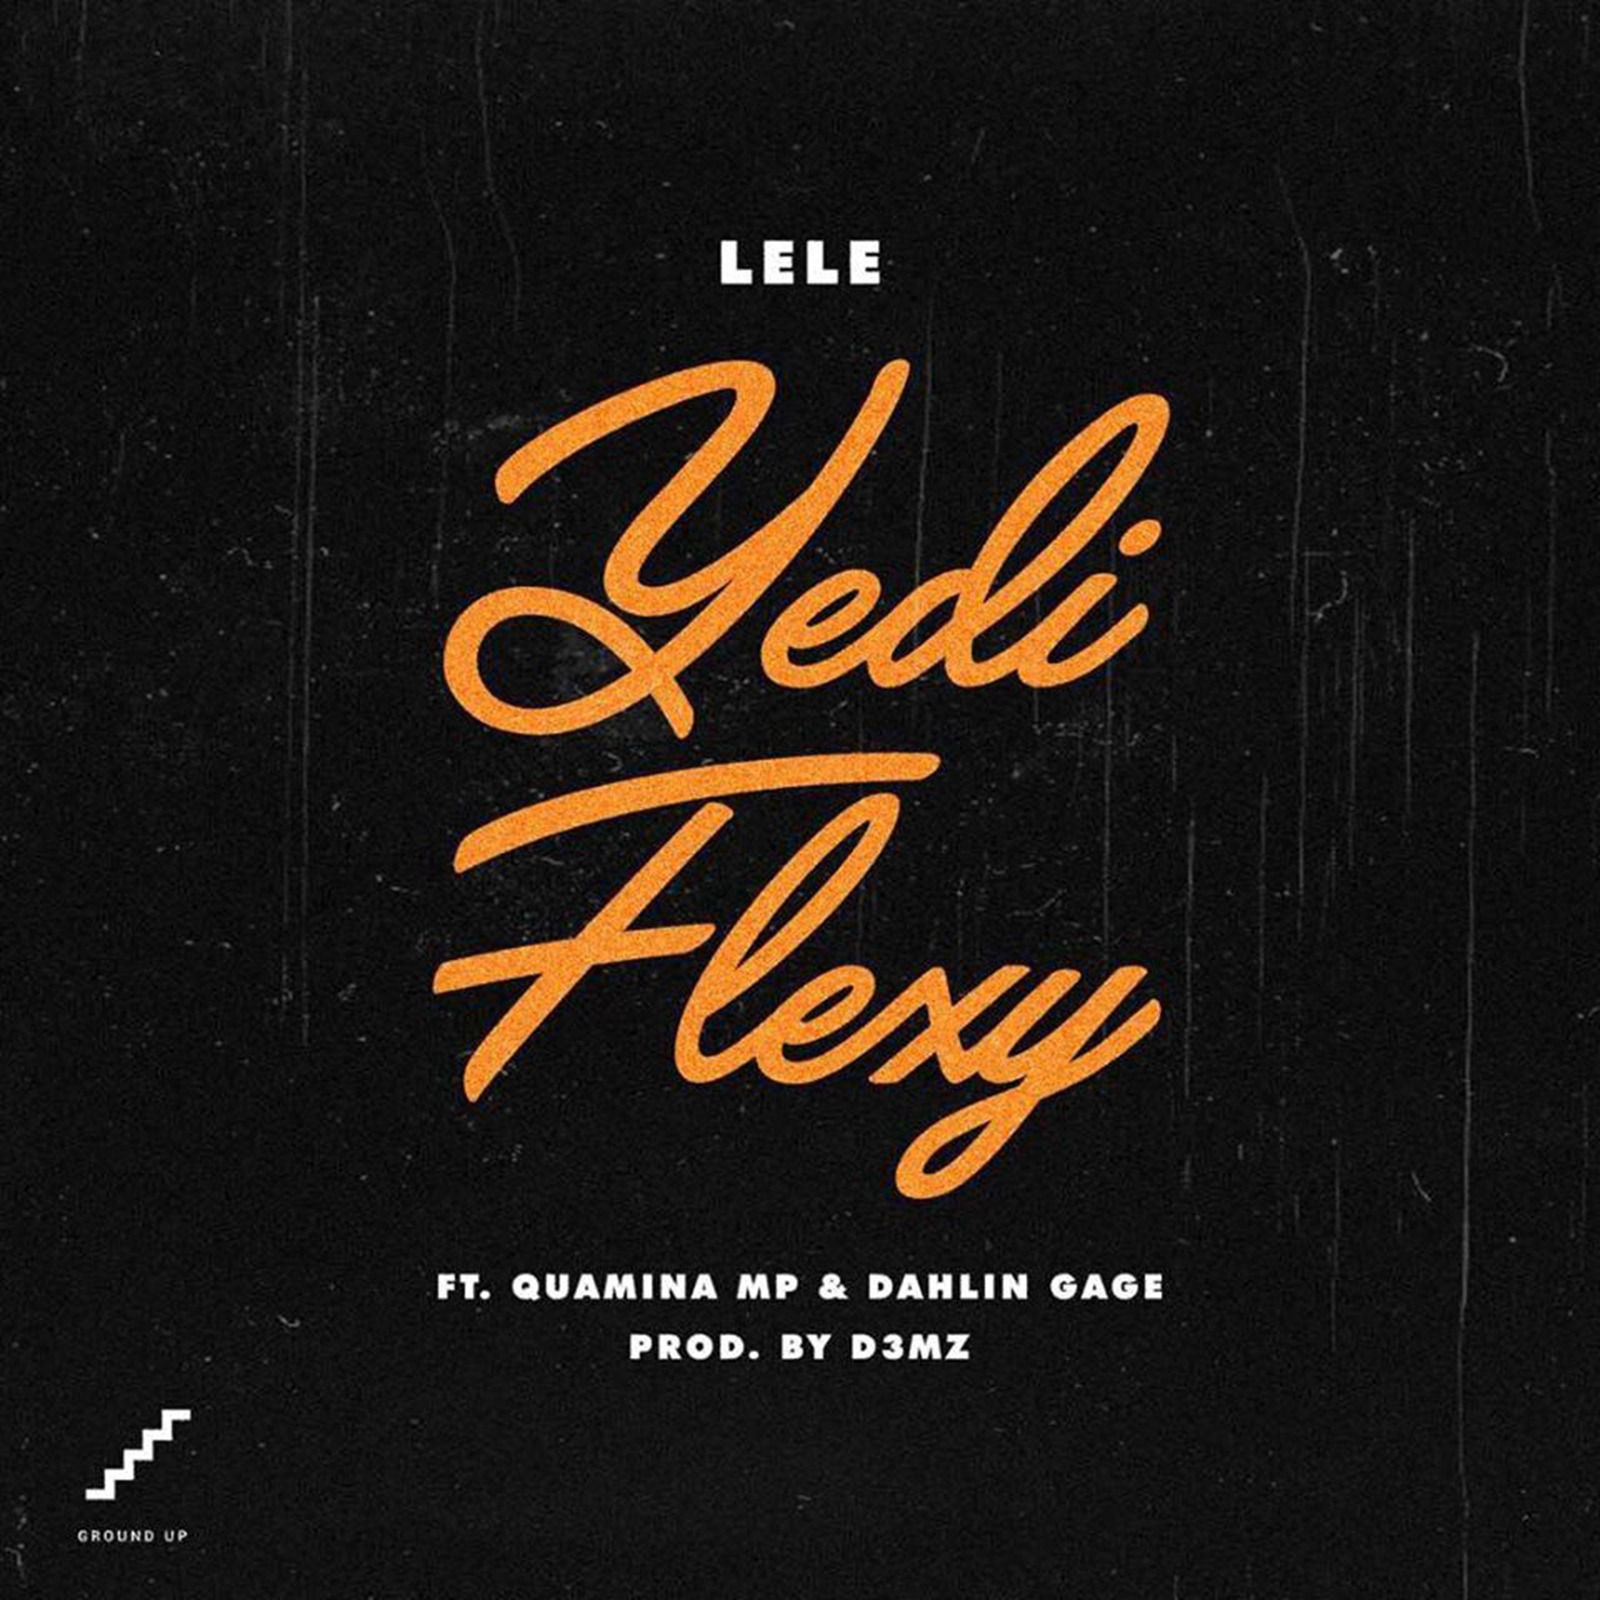 Y3de Flexy by Lele feat Quamina Mp & Dahlin Gage